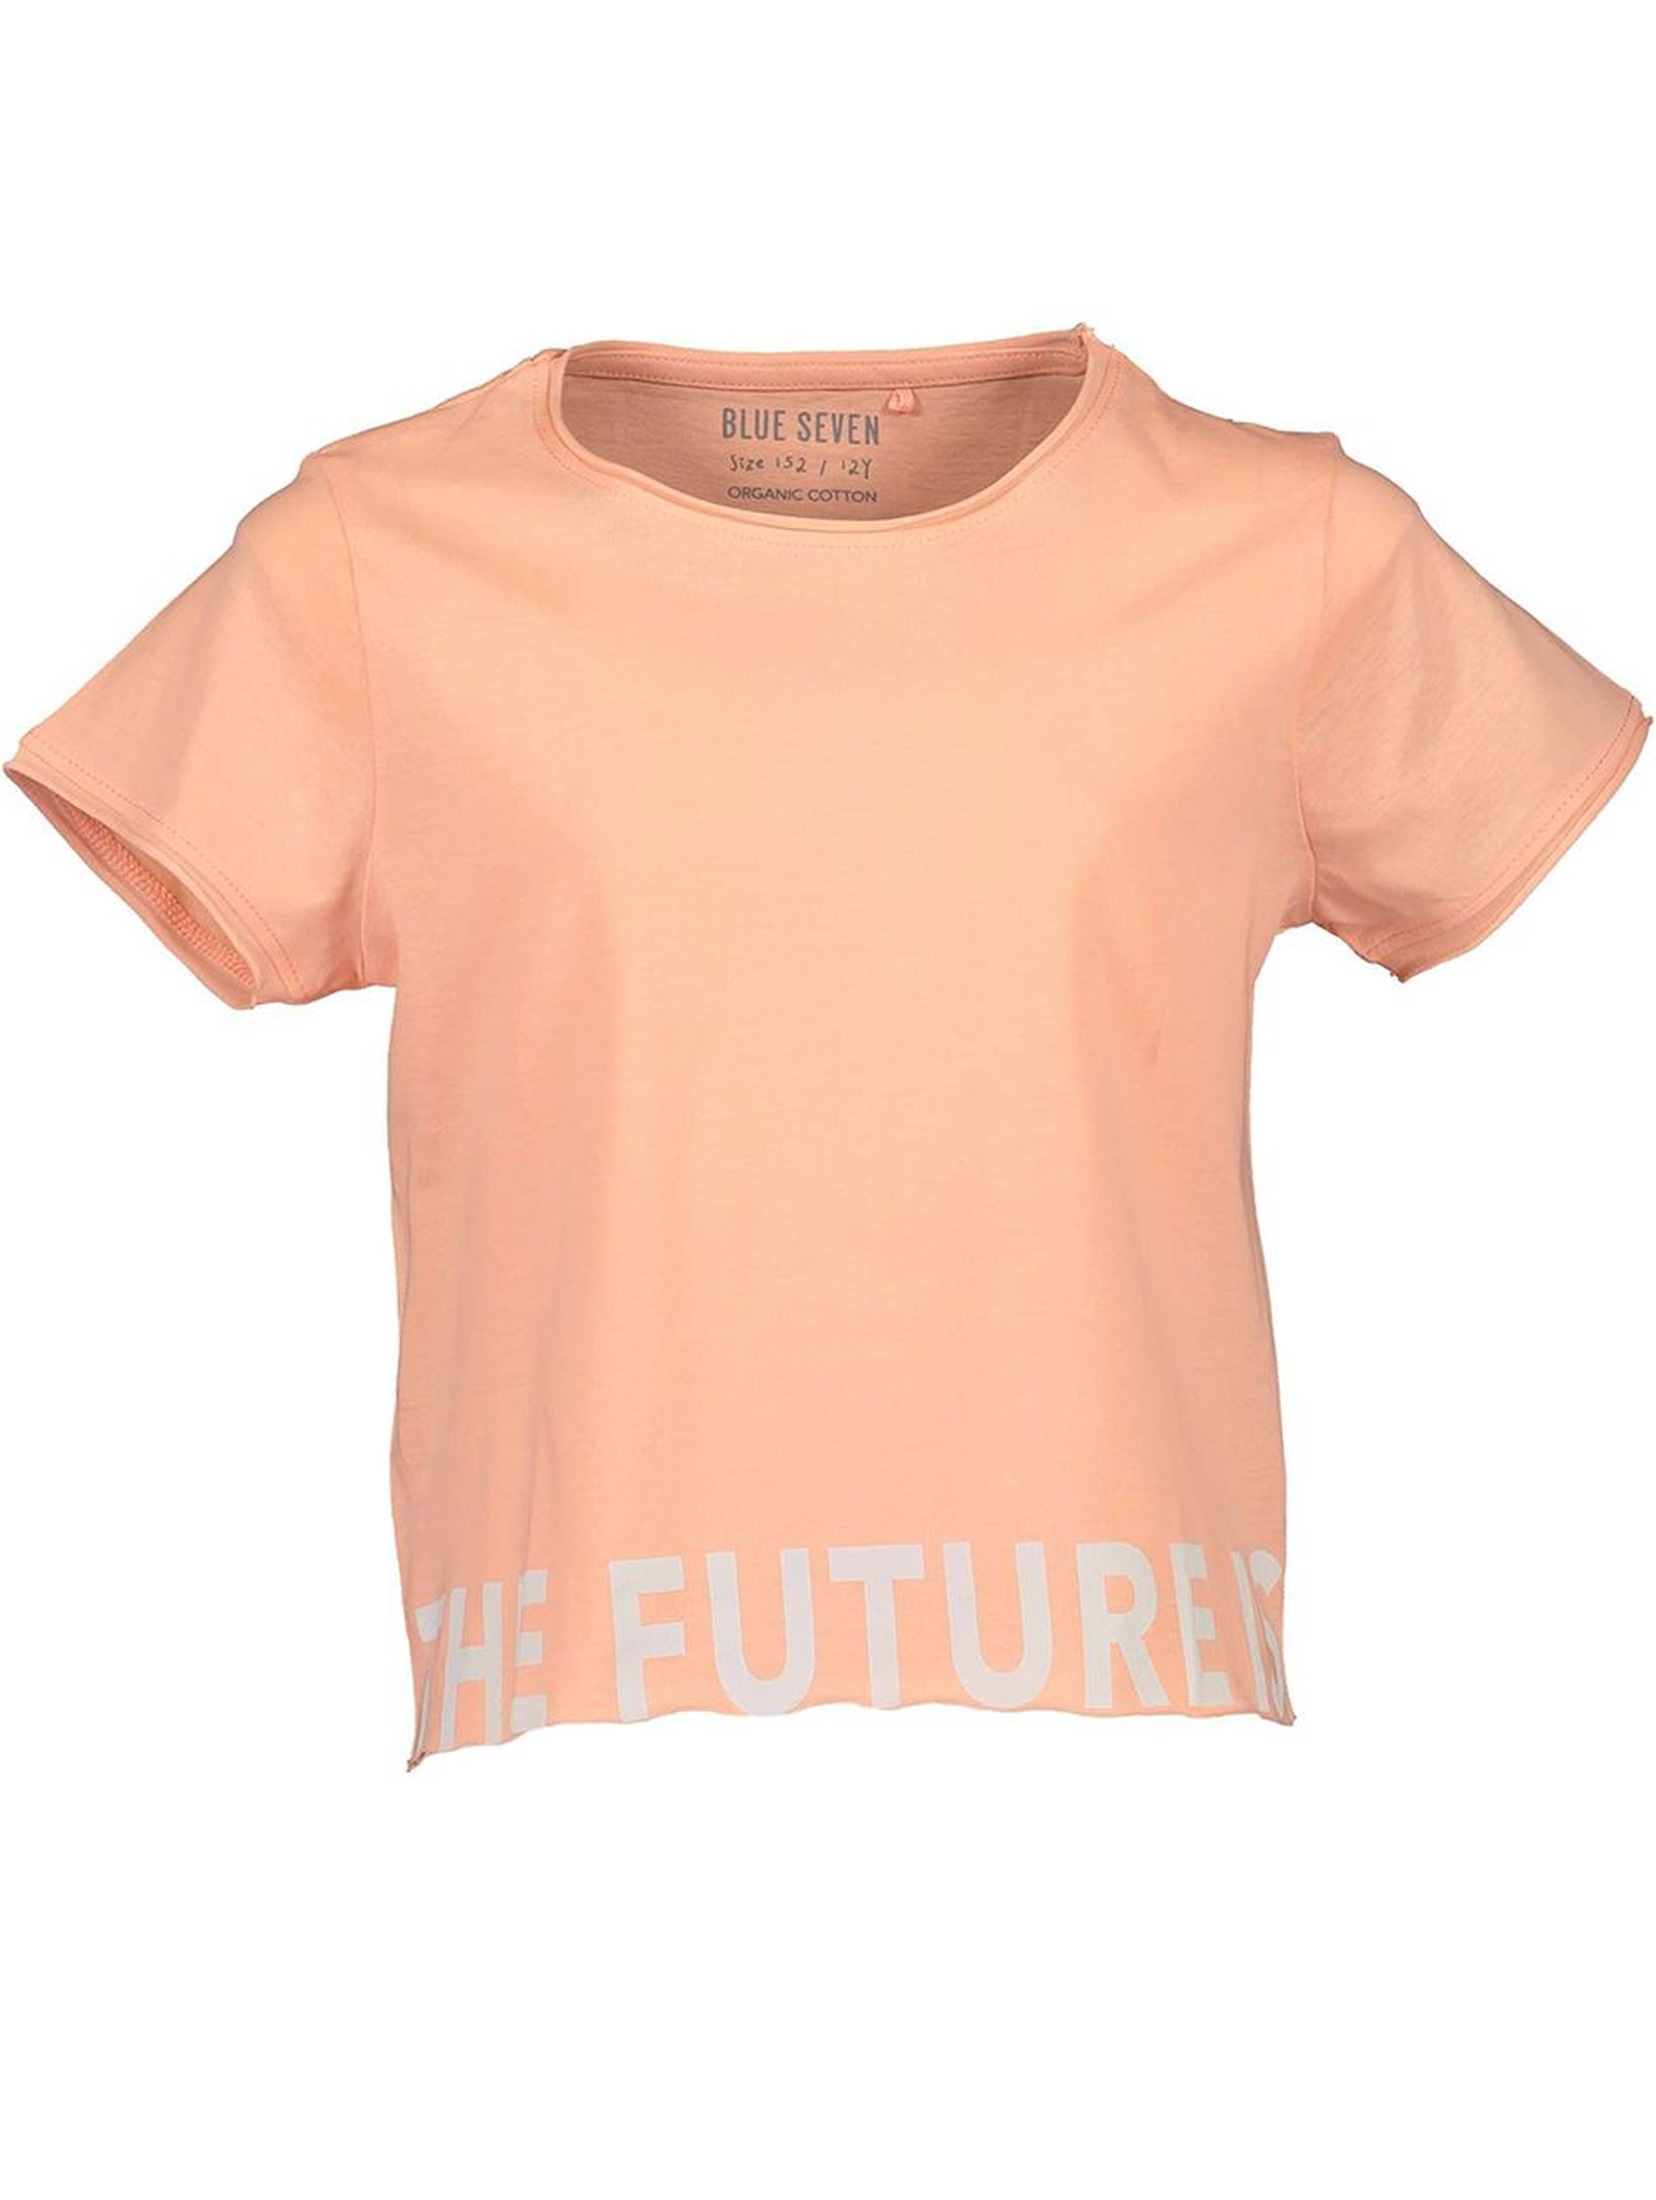 Koszulka dziewczęca w kolorze brzoskwiniowym z dużym napisem